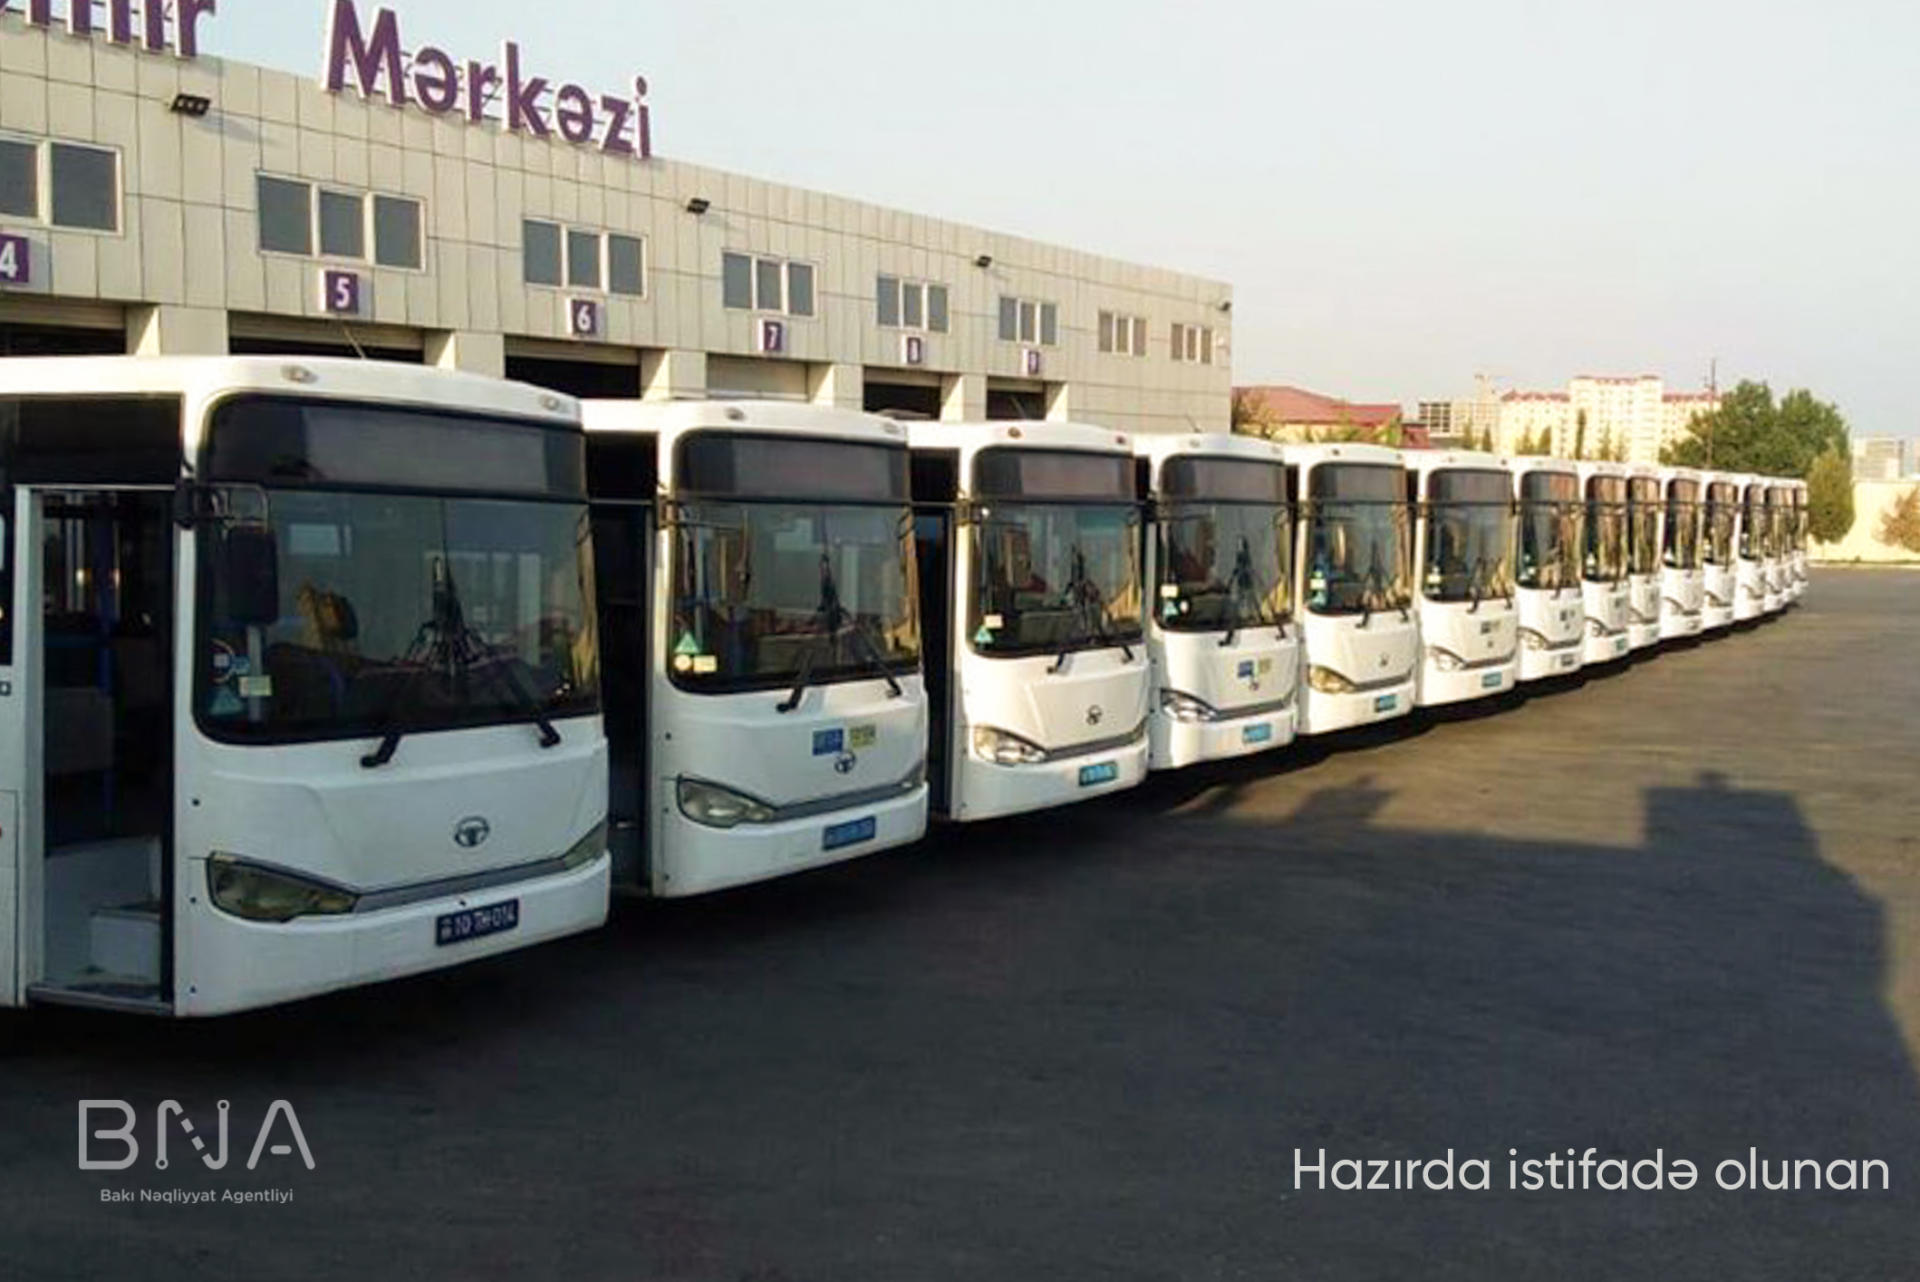 С завтрашнего дня в Баку будет обновлен автобусный парк на одной маршрутной линии (ФОТО)